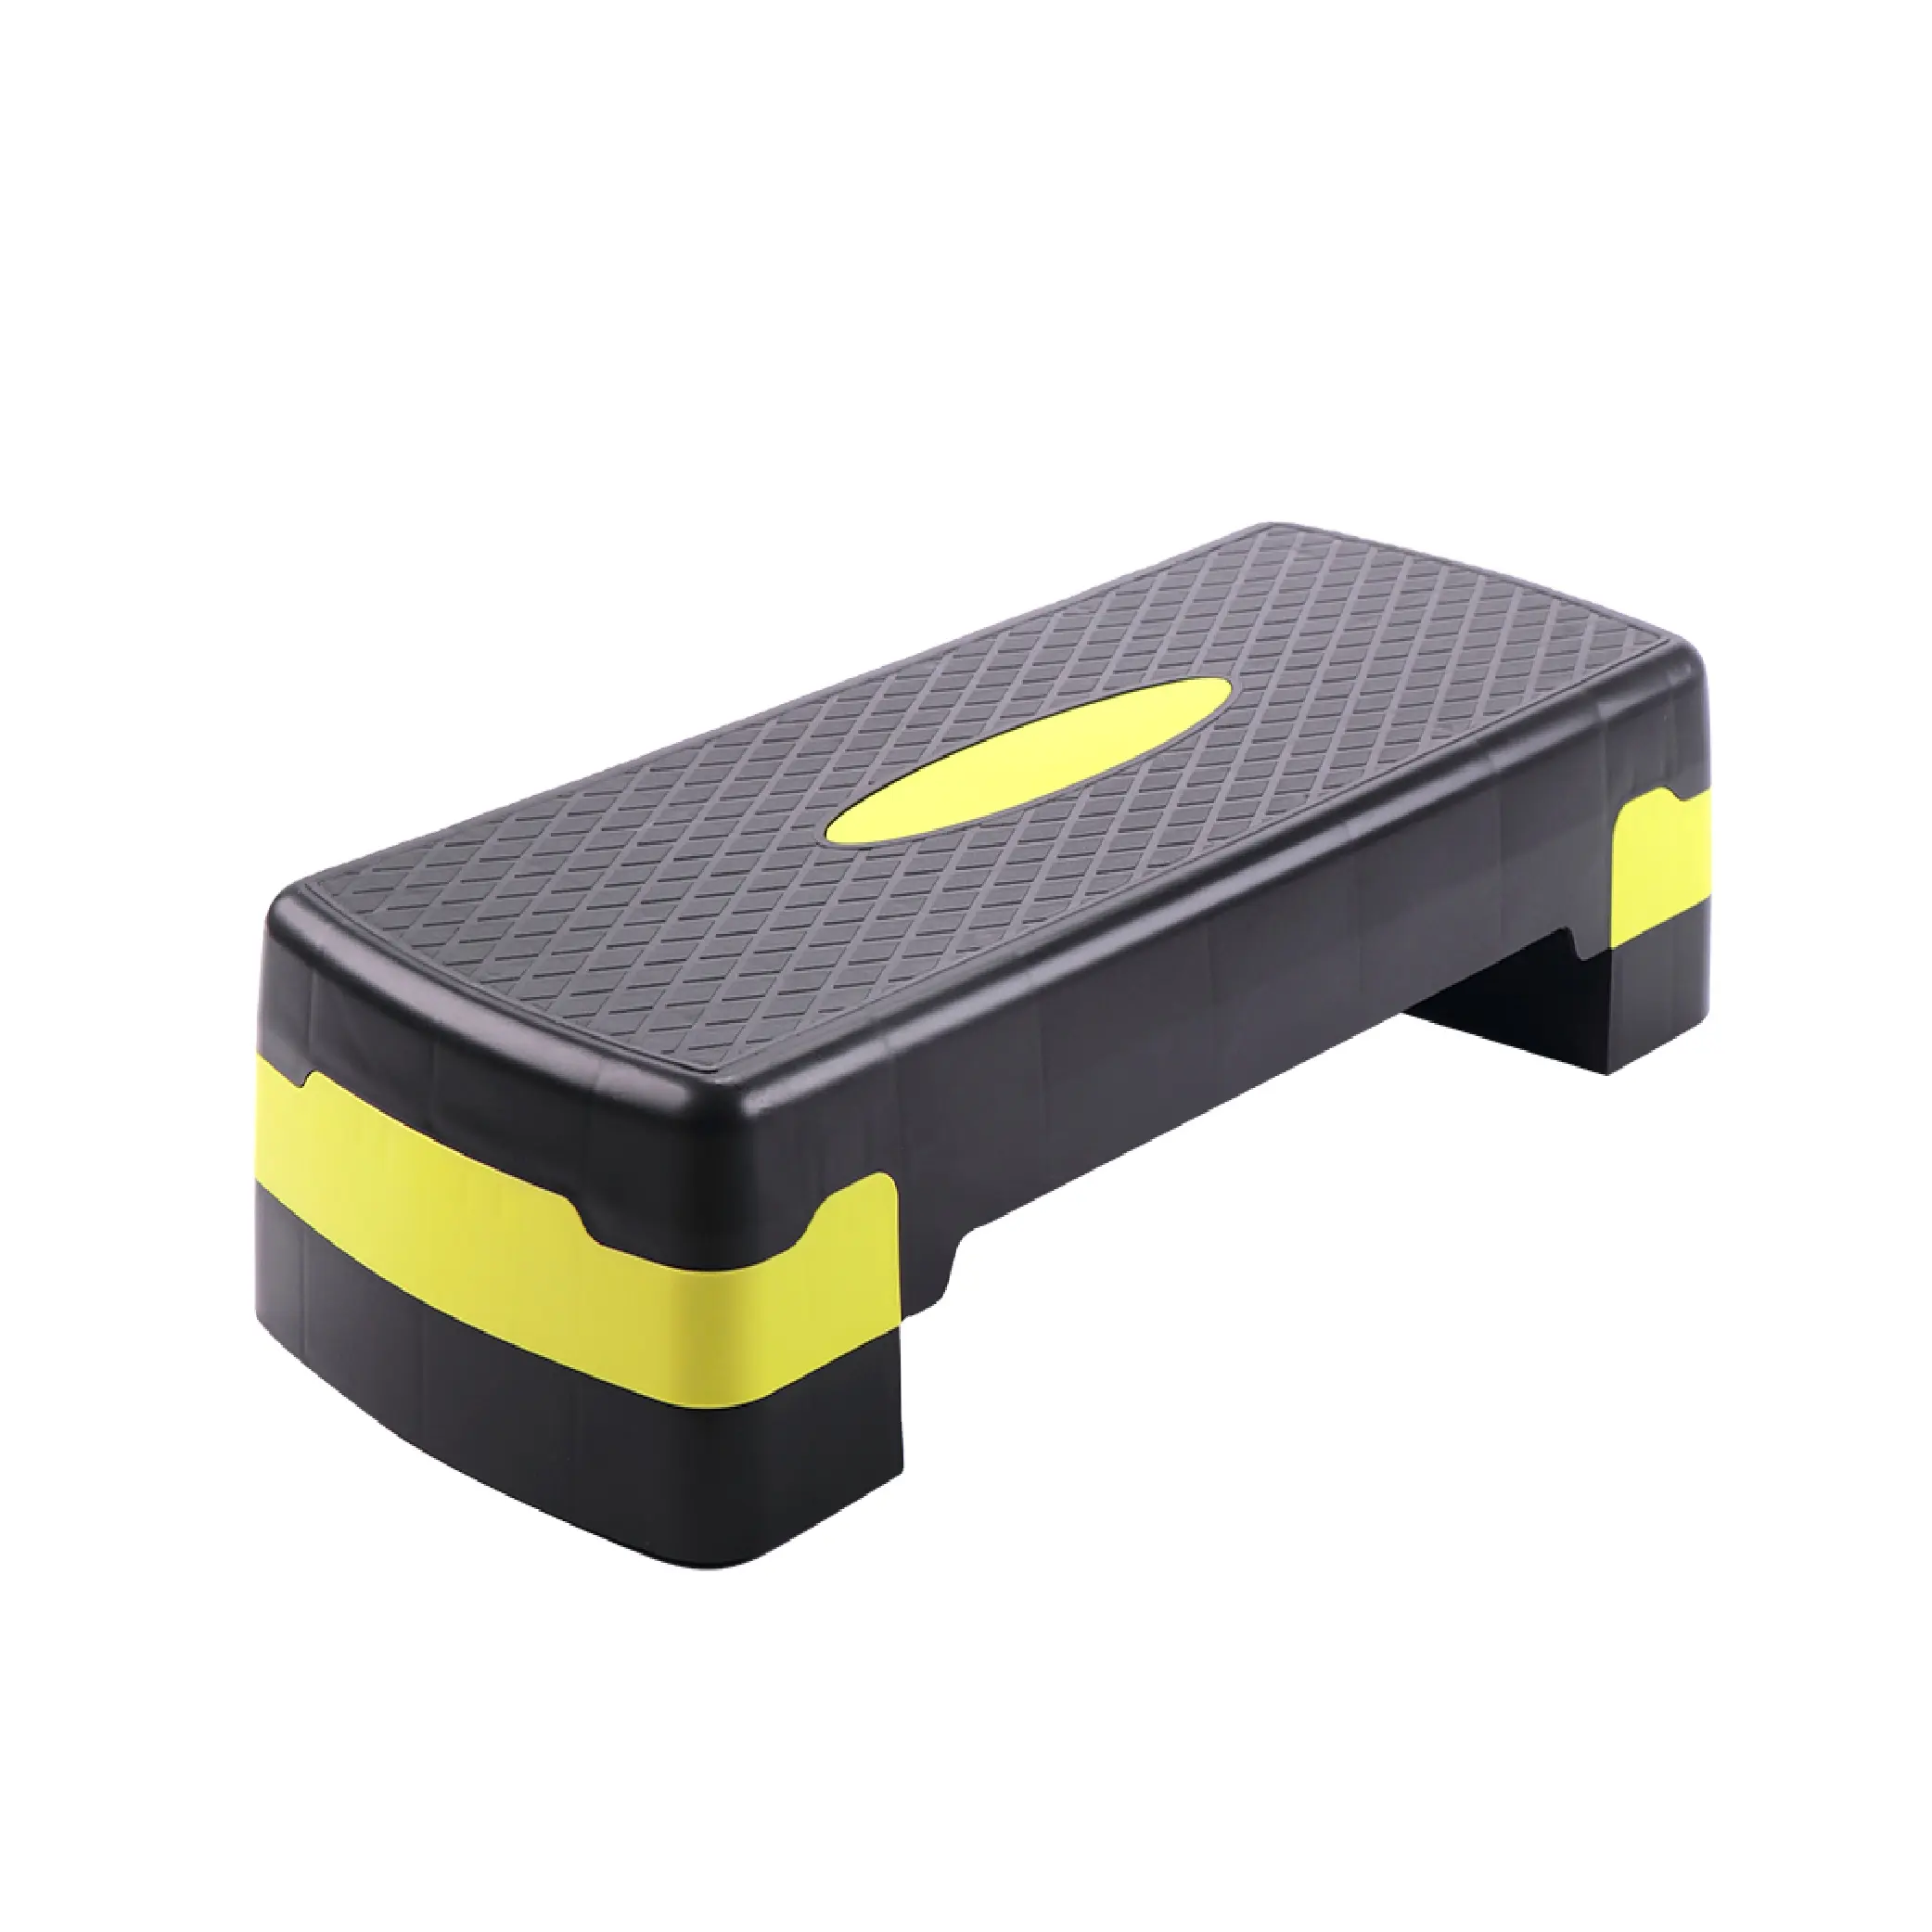 Einstellbare Trainingsgeräte Eco Gym Übungsgerät Fitness PP 3 Stufen rosa Bank Brett Aerobic Schritt-Schrittplatform für Sport